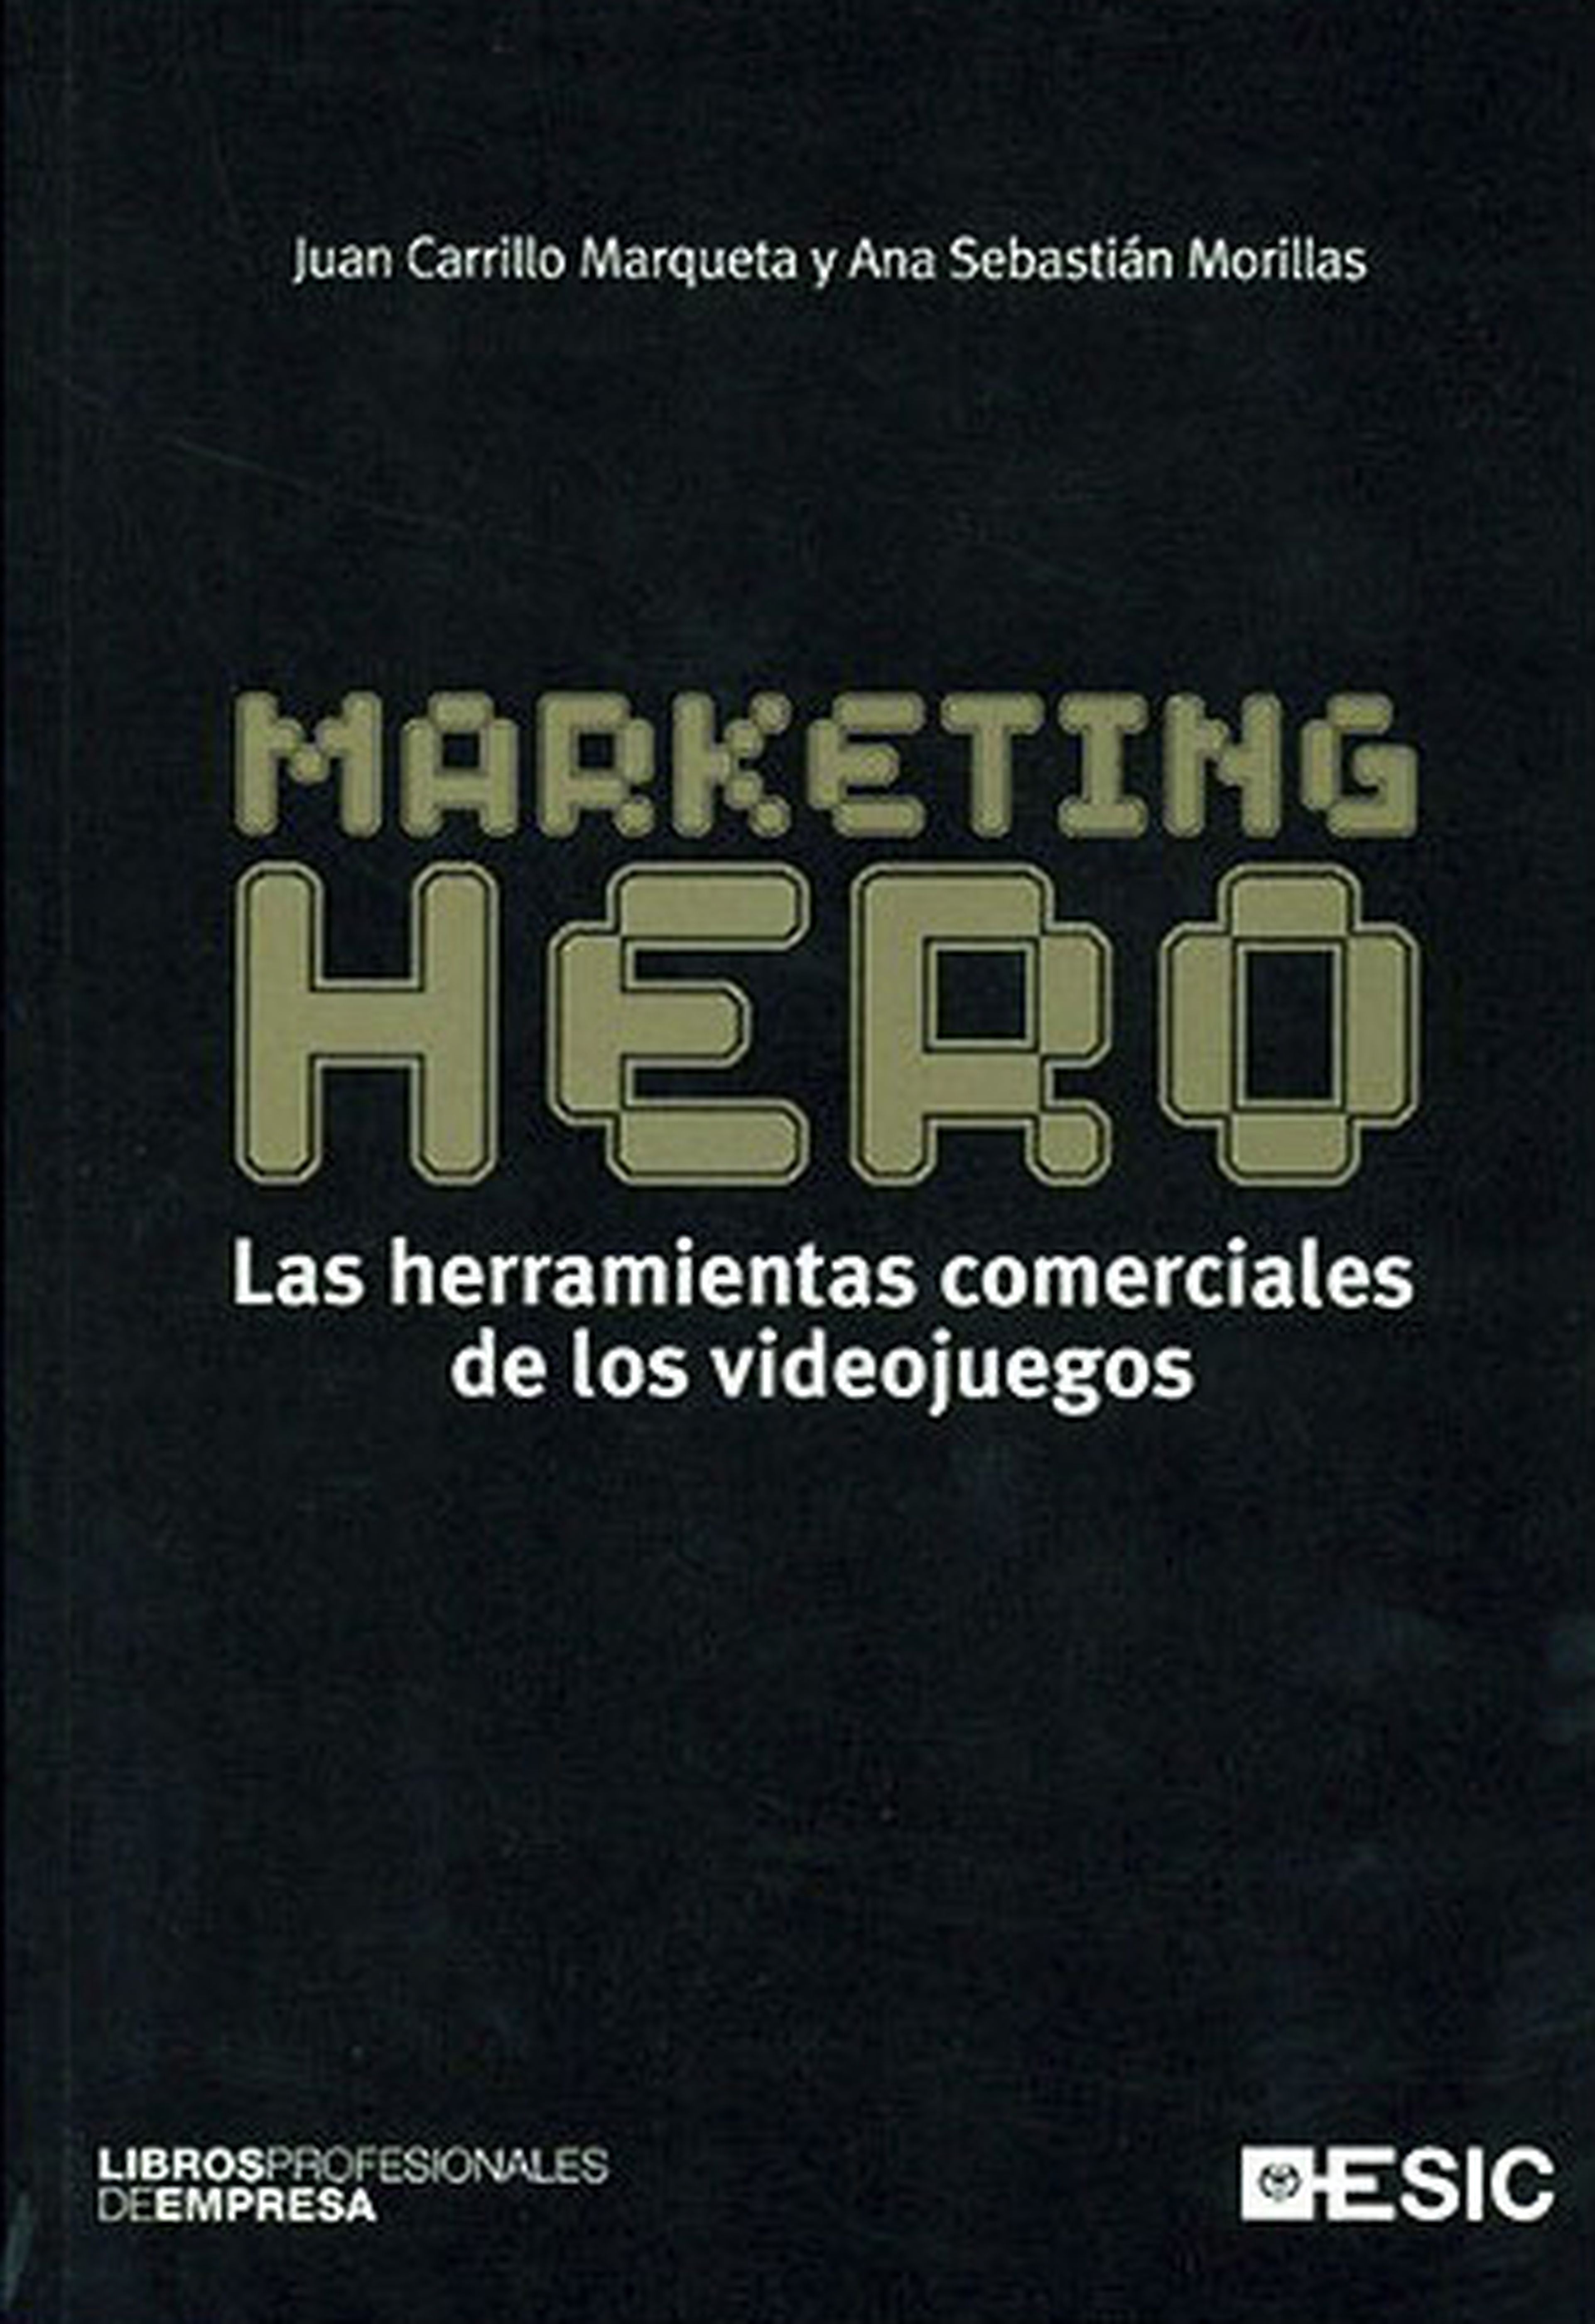 Marketing Hero: Las herramientas comerciales de los videojuegos